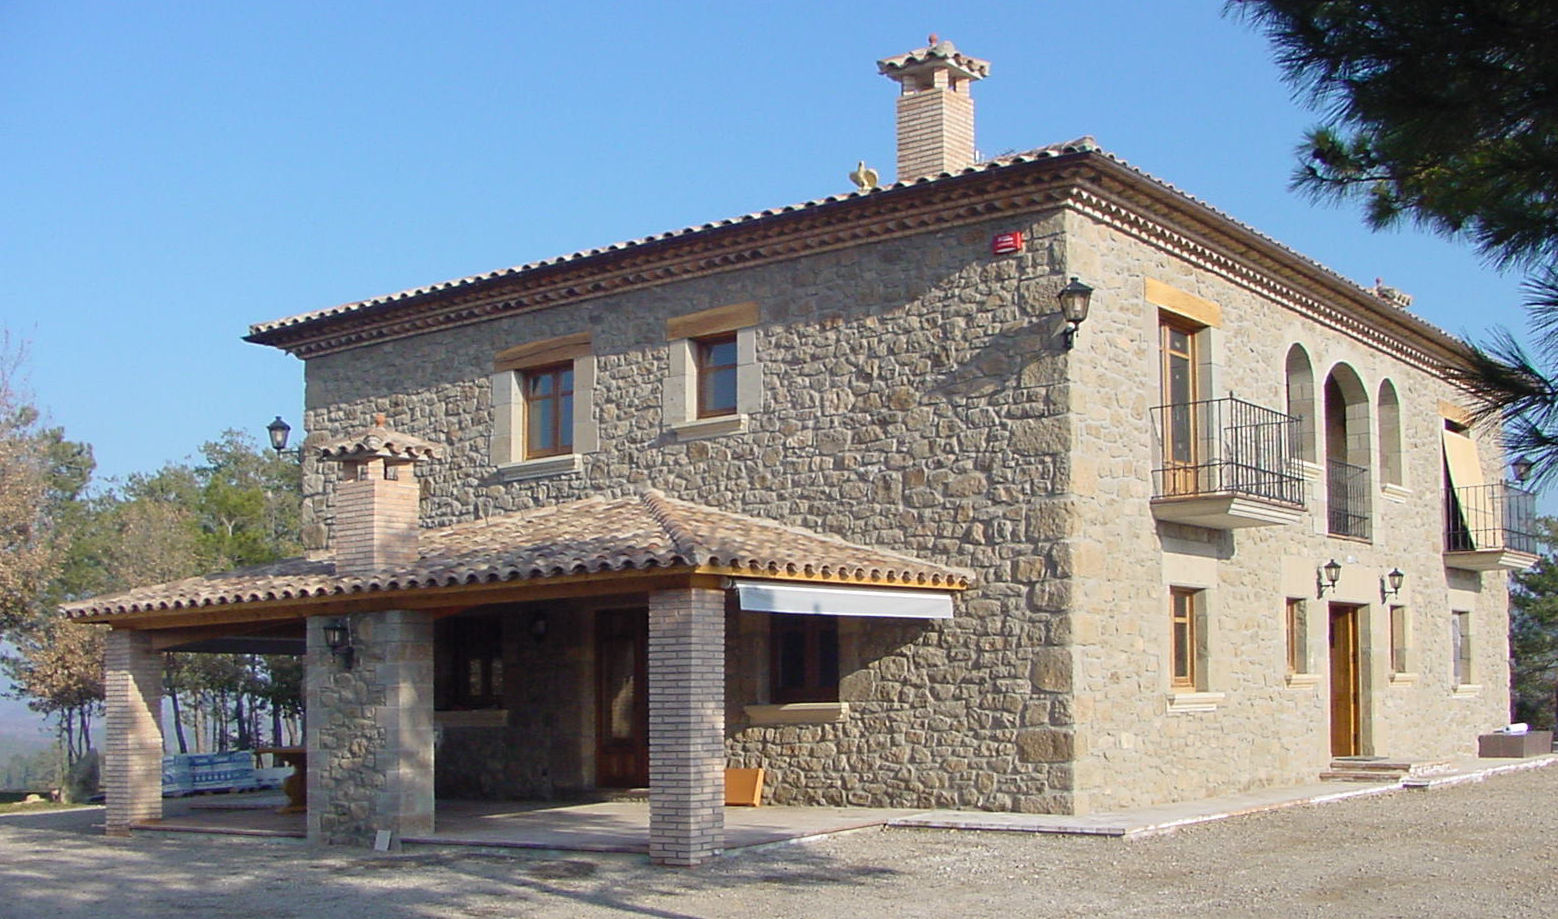 Casa de turismo rural en la Torre d'Oristà (Barcelona), ALENTORN i ALENTORN ARQUITECTES, SLP ALENTORN i ALENTORN ARQUITECTES, SLP Rustik Evler Taş